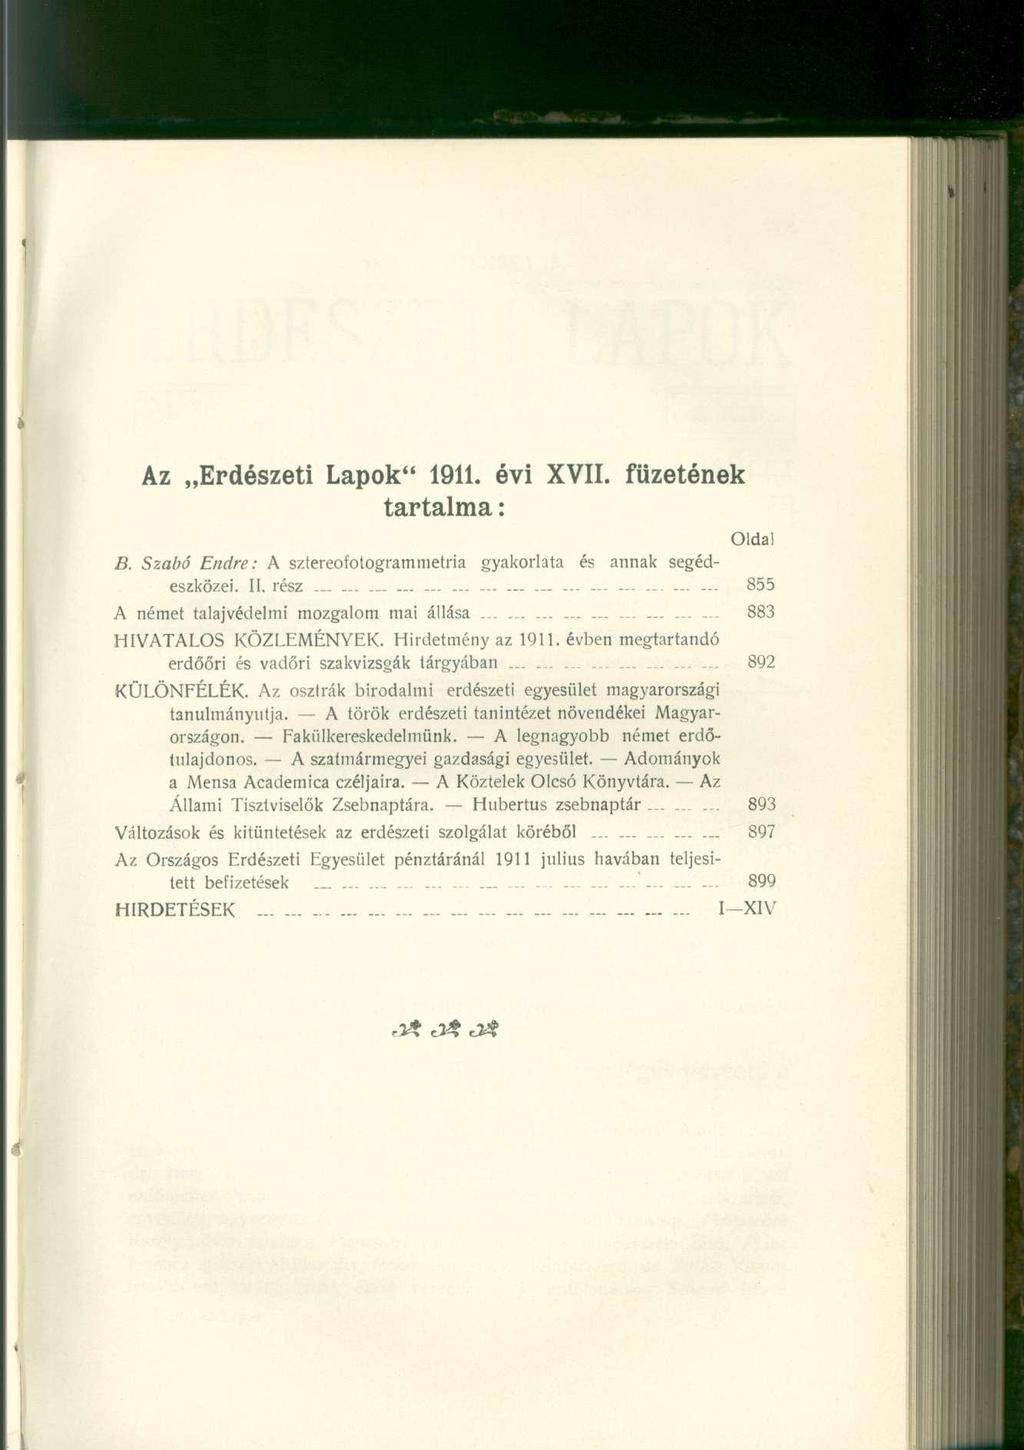 Az Erdészeti Lapok" 1911. évi XVII. füzetének tartalma: Oldai B. Szabó Endre: A szlereofotogrammetria gyakorlata és annak segédeszközei. II. rész... ~ -.